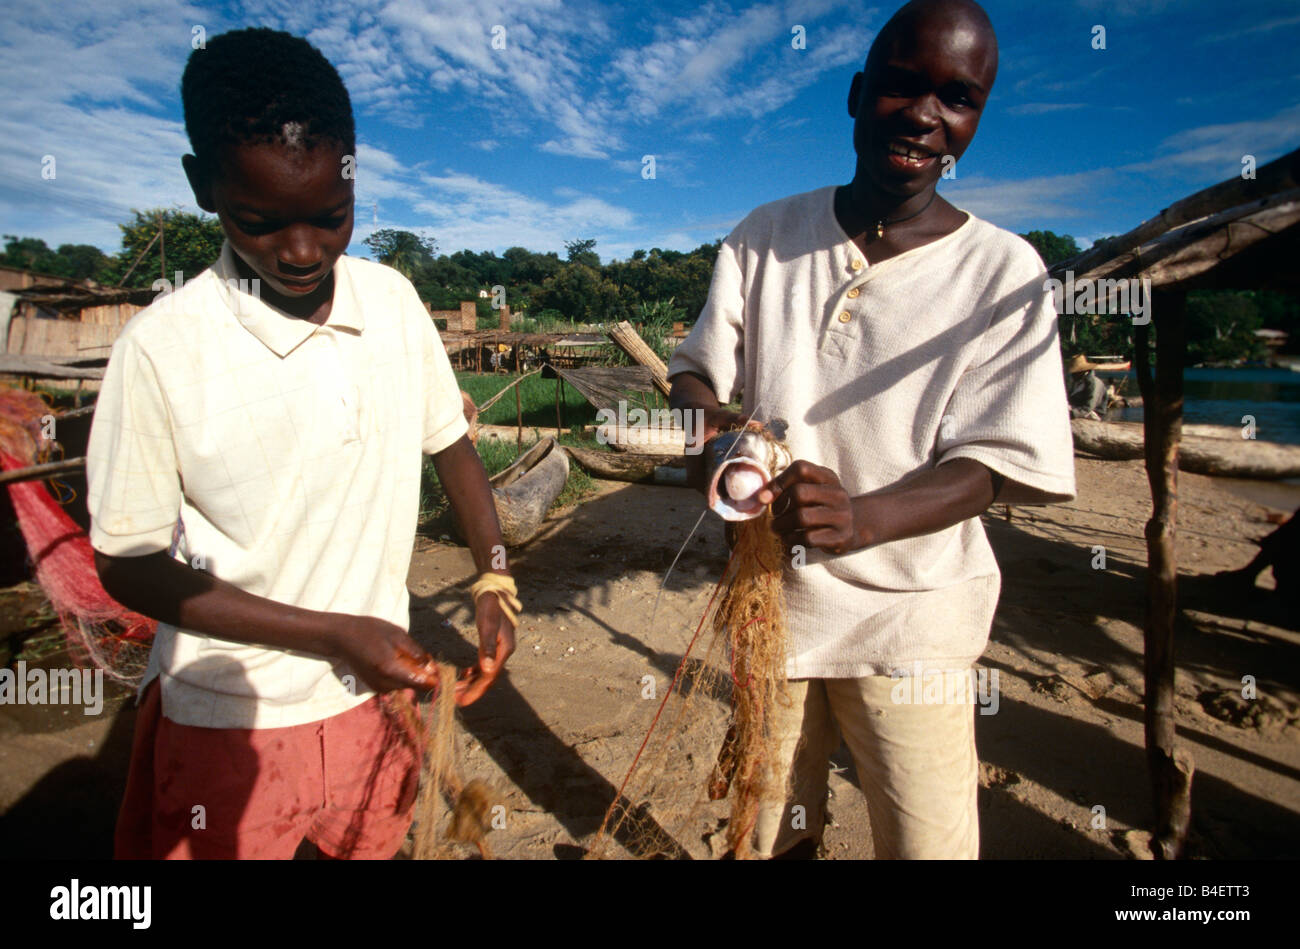 Boys preparing fishing net, Uganda Stock Photo